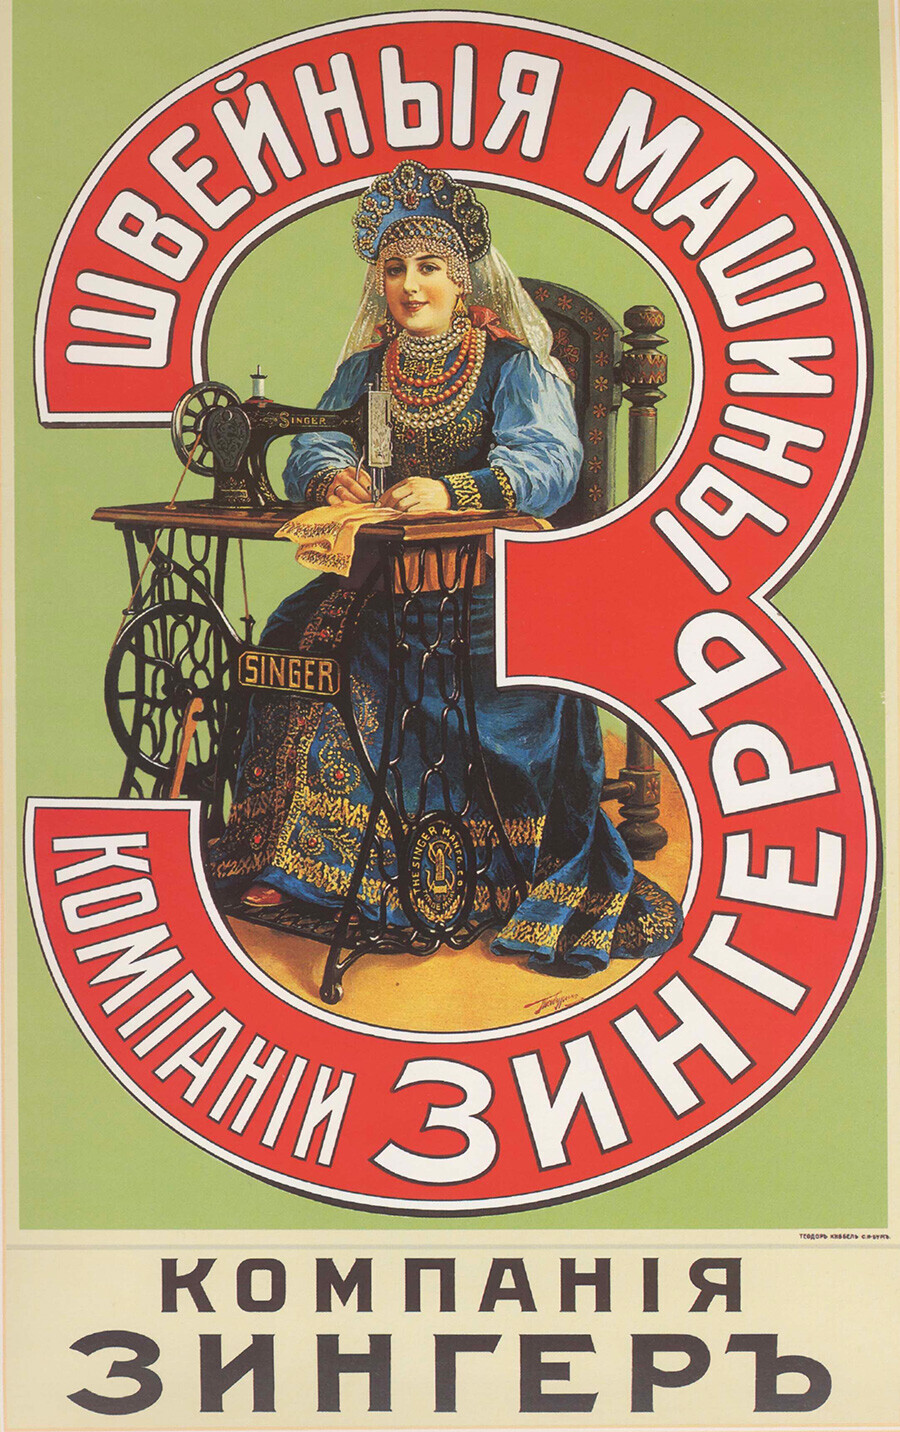 Iklan mesin jahit 'Singer', 1900-an.